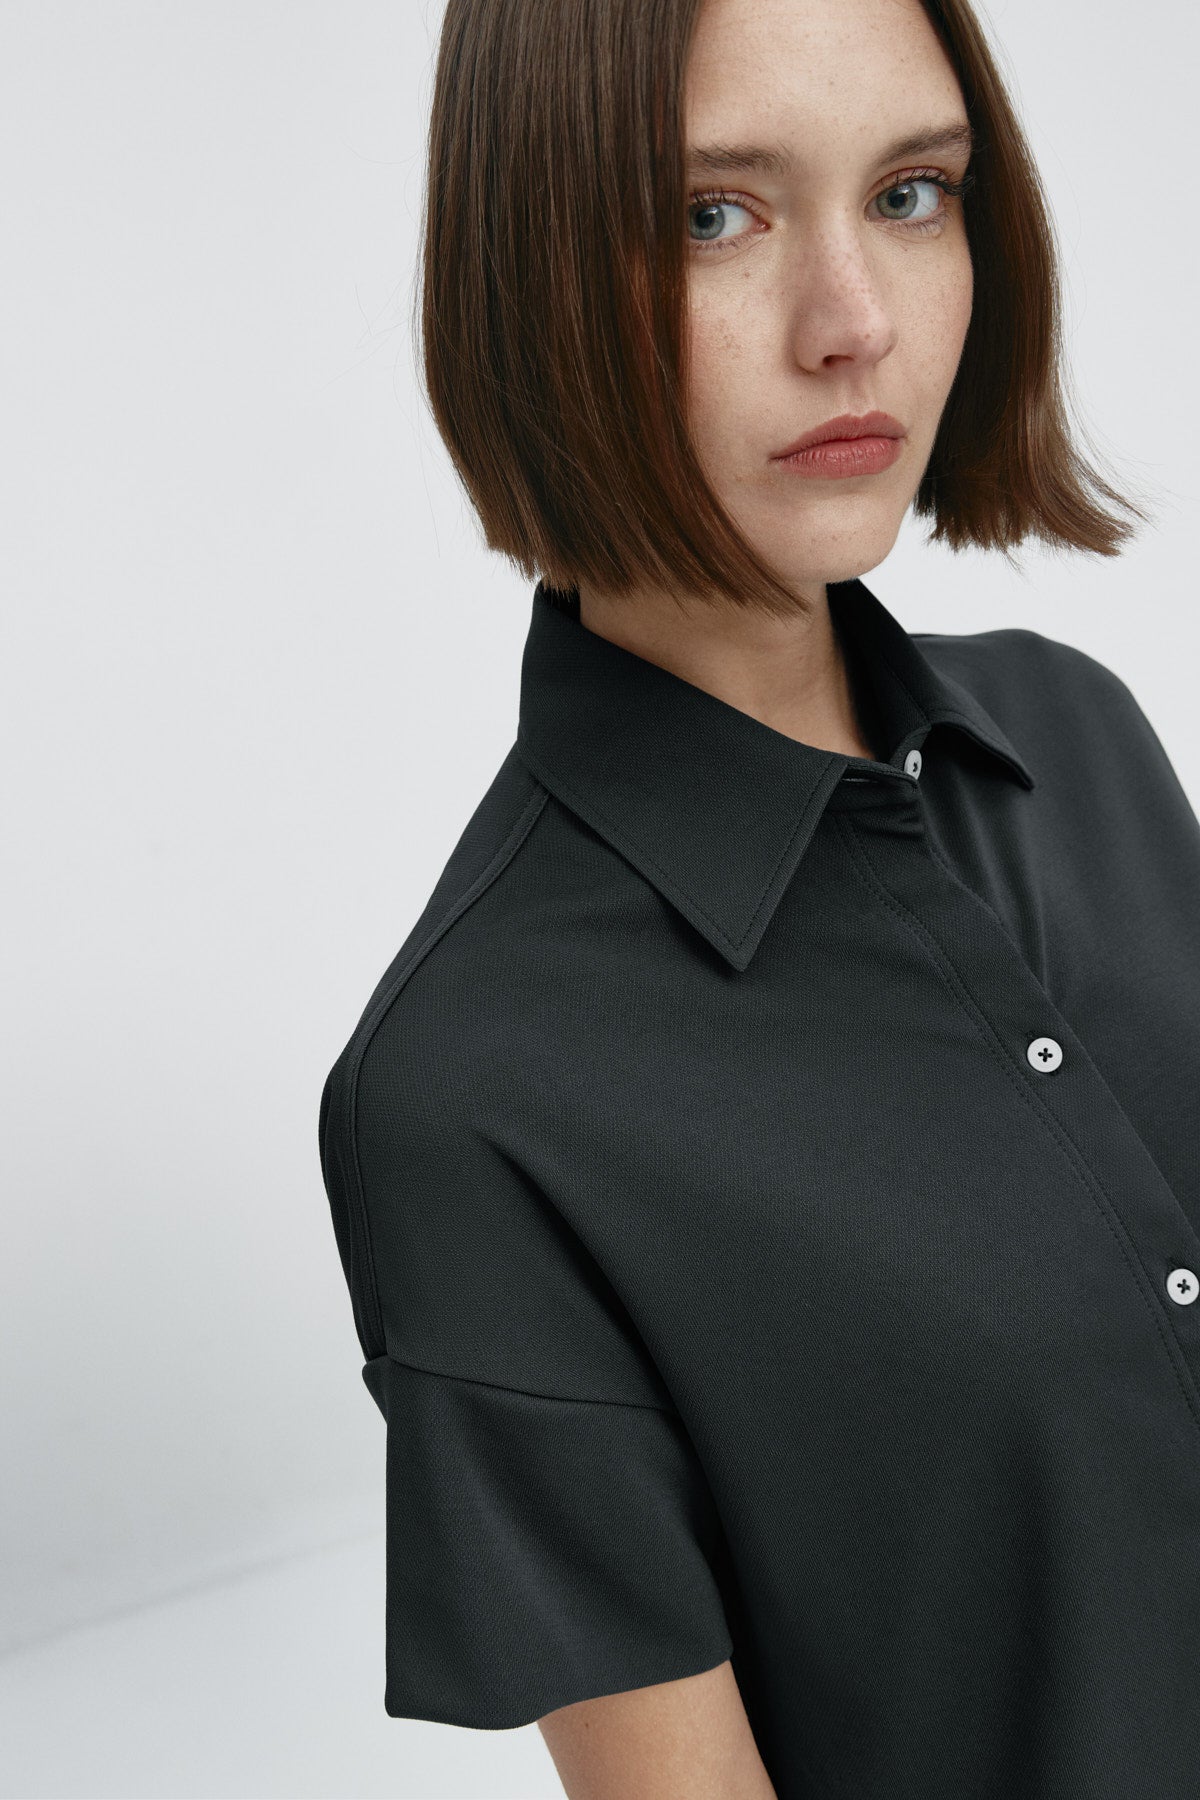 Camisa manga corta mujer negra de Sepiia, estilo y versatilidad en una prenda cómoda y resistente. Foto retrato